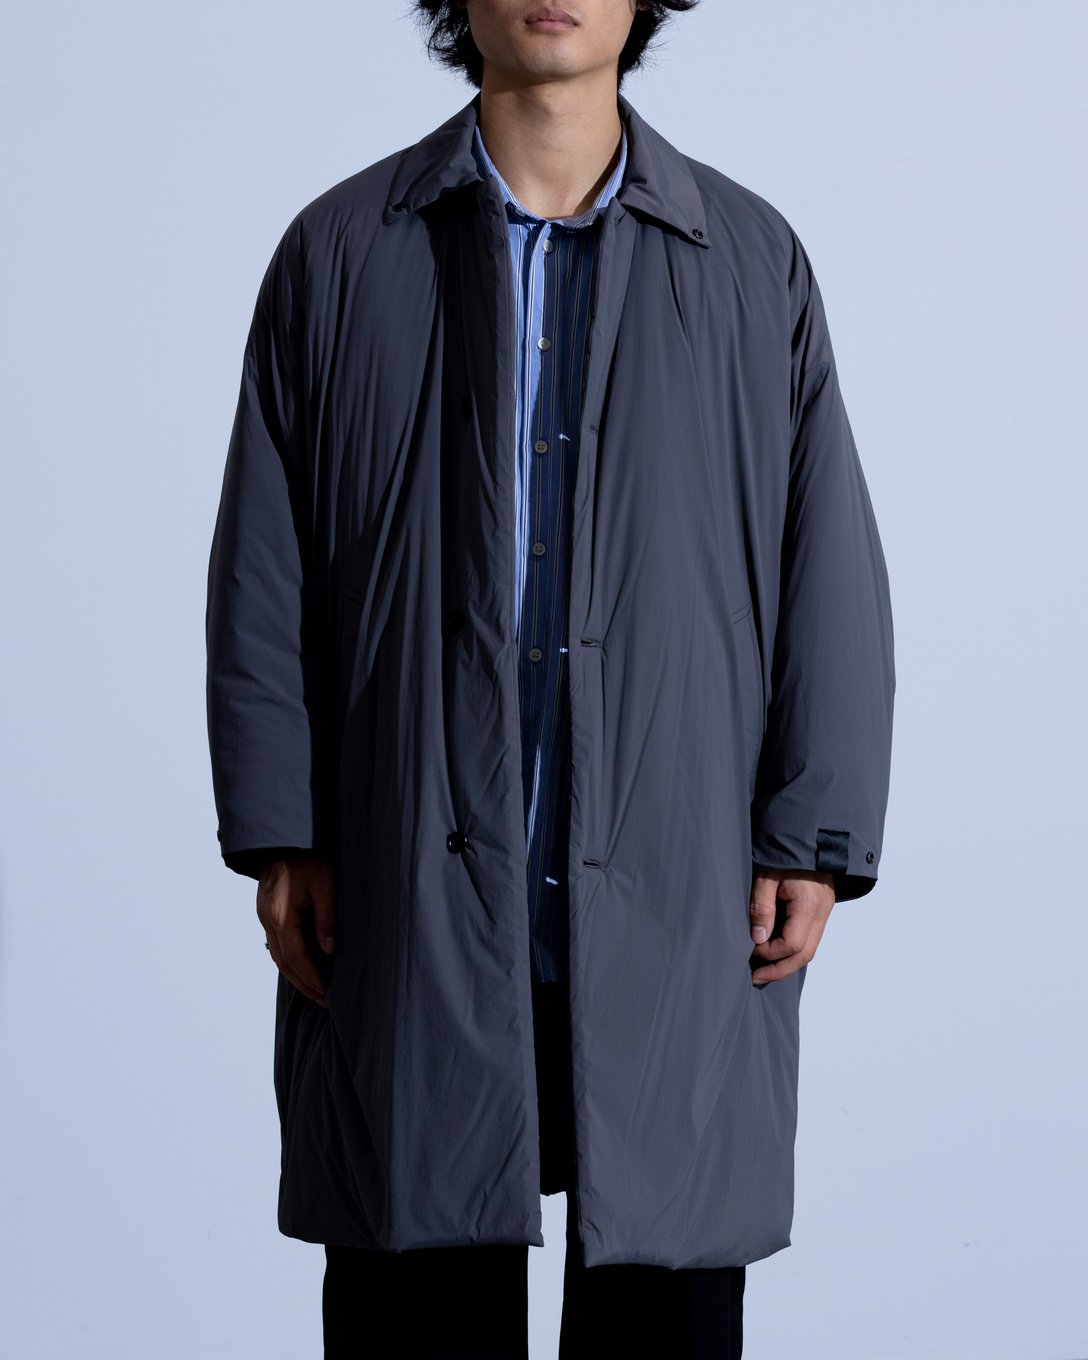 Nハリウッドのチャコールバルマカーンコートを着た男性モデル